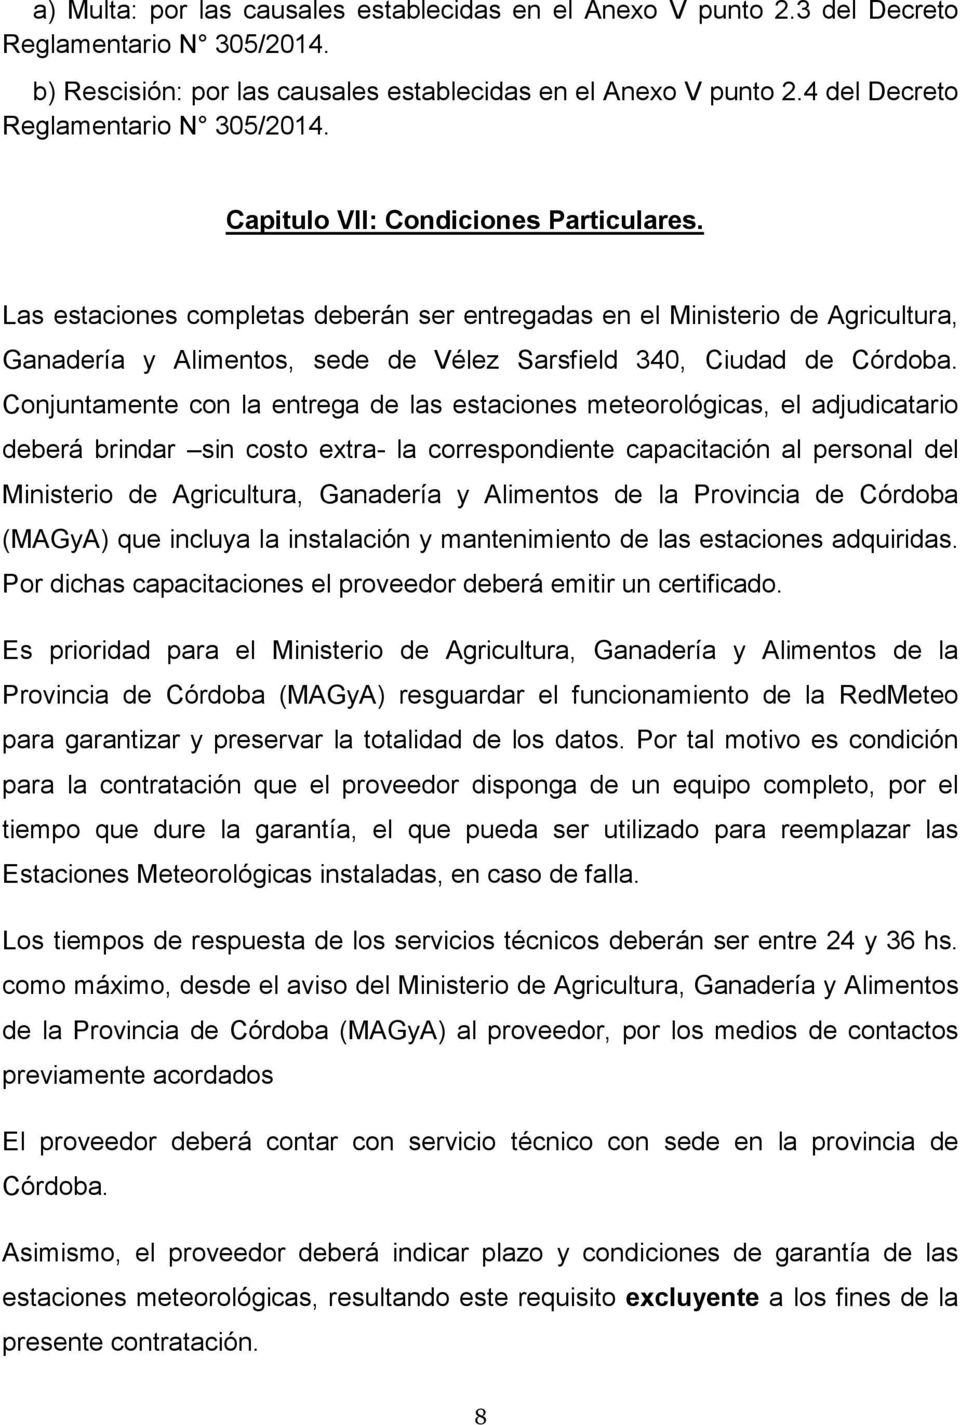 Las estaciones completas deberán ser entregadas en el Ministerio de Agricultura, Ganadería y Alimentos, sede de Vélez Sarsfield 340, Ciudad de Córdoba.